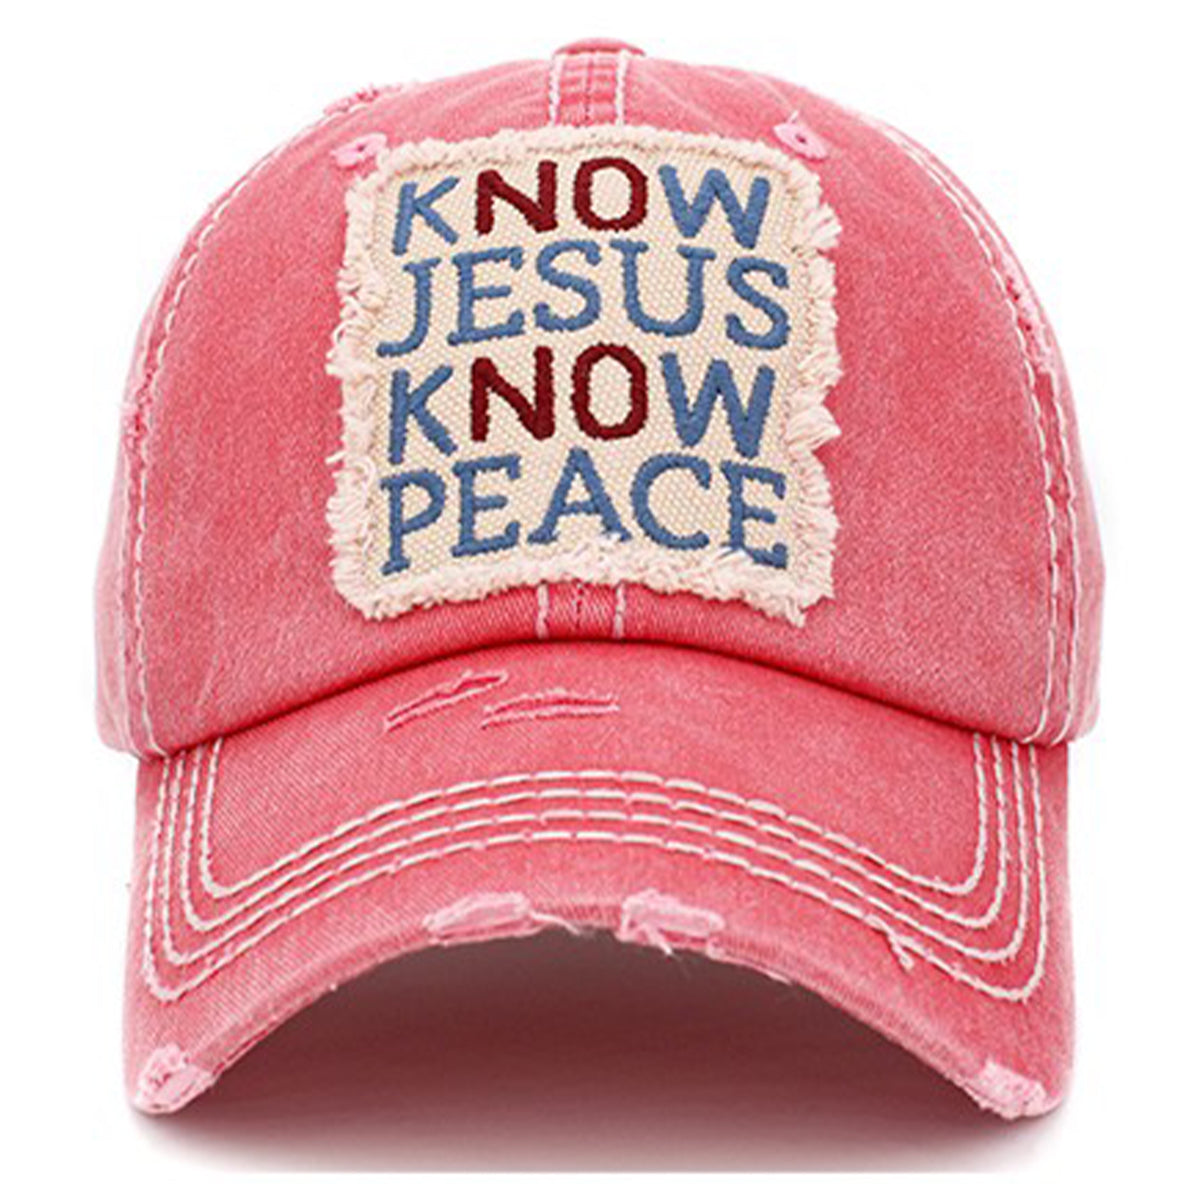 1402 - Know Jesus Know Peace Hat